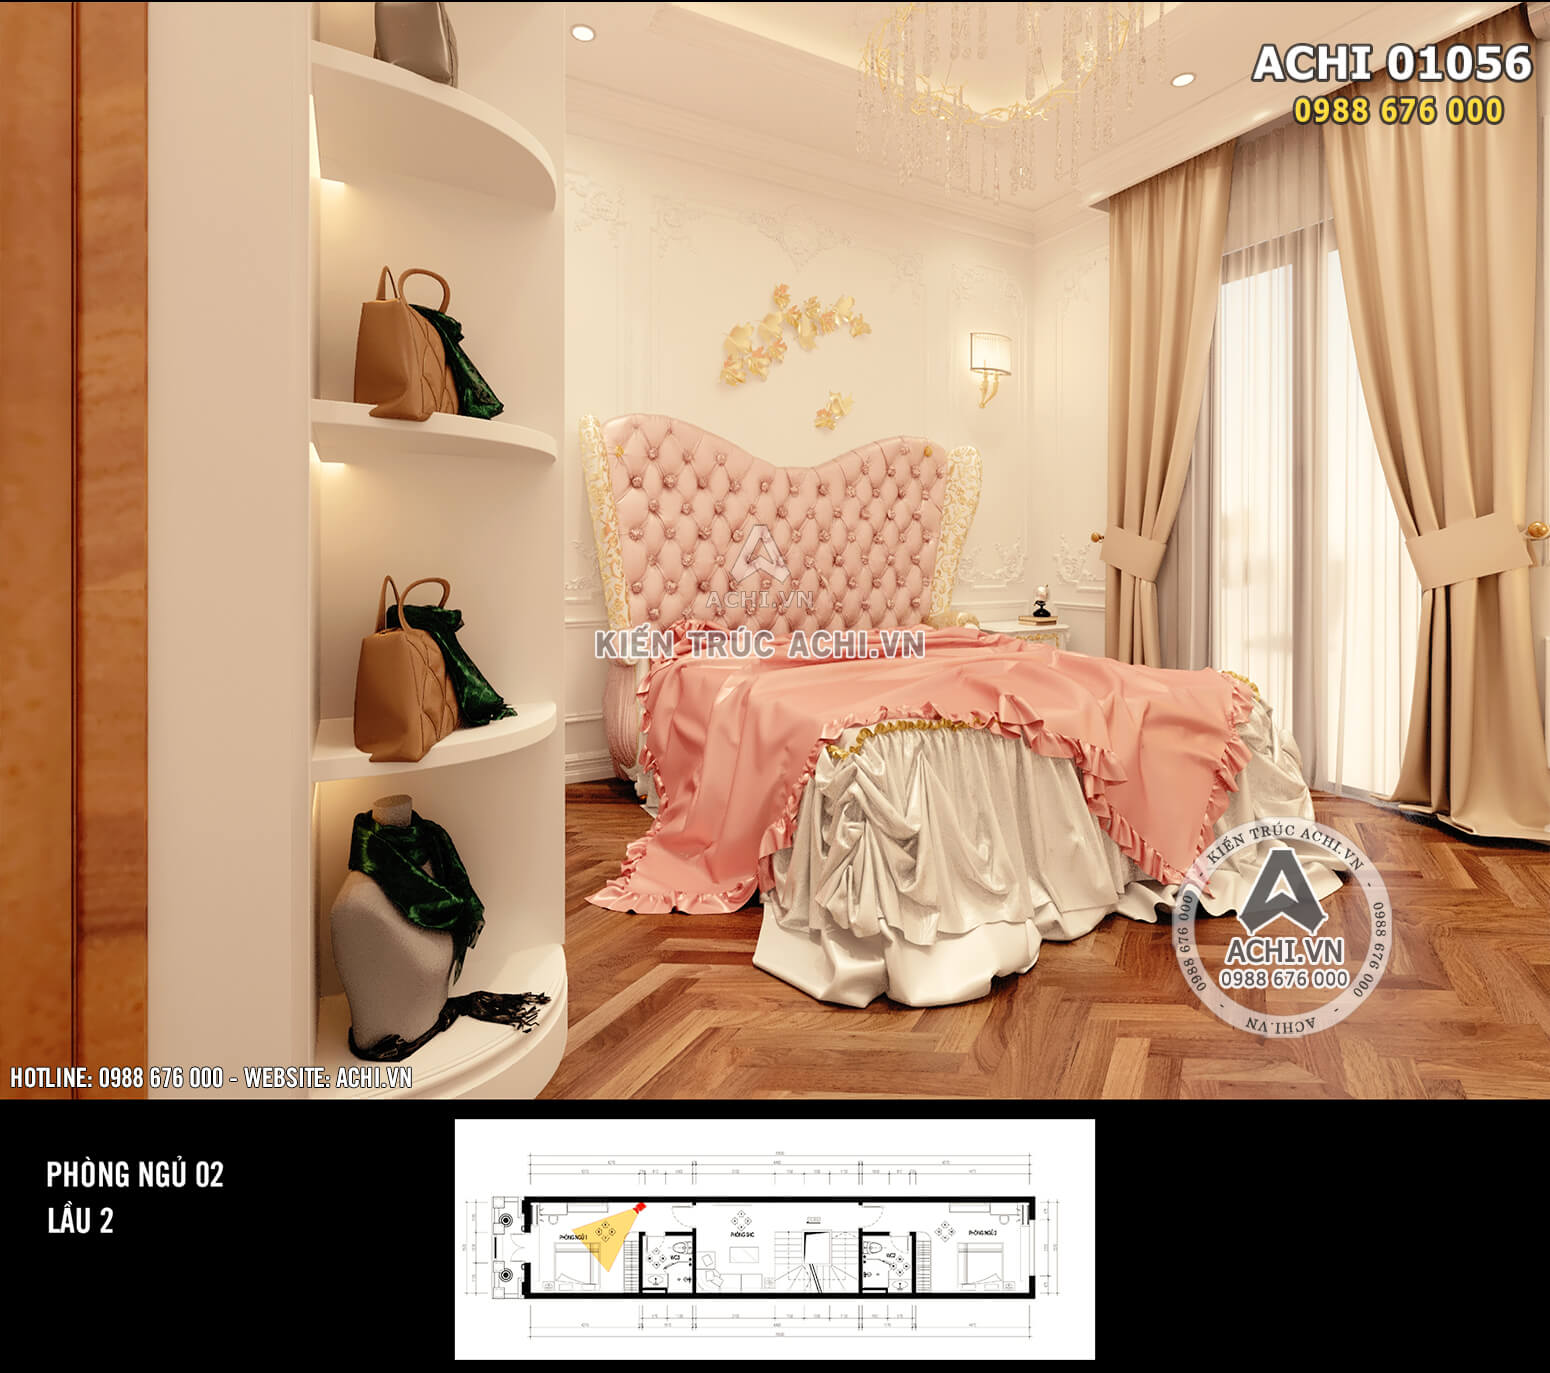 Hình ảnh: Thiết kế nội thất nhà phố tân cổ điển - Không gian phòng ngủ khép kín 2 - Lầu 2